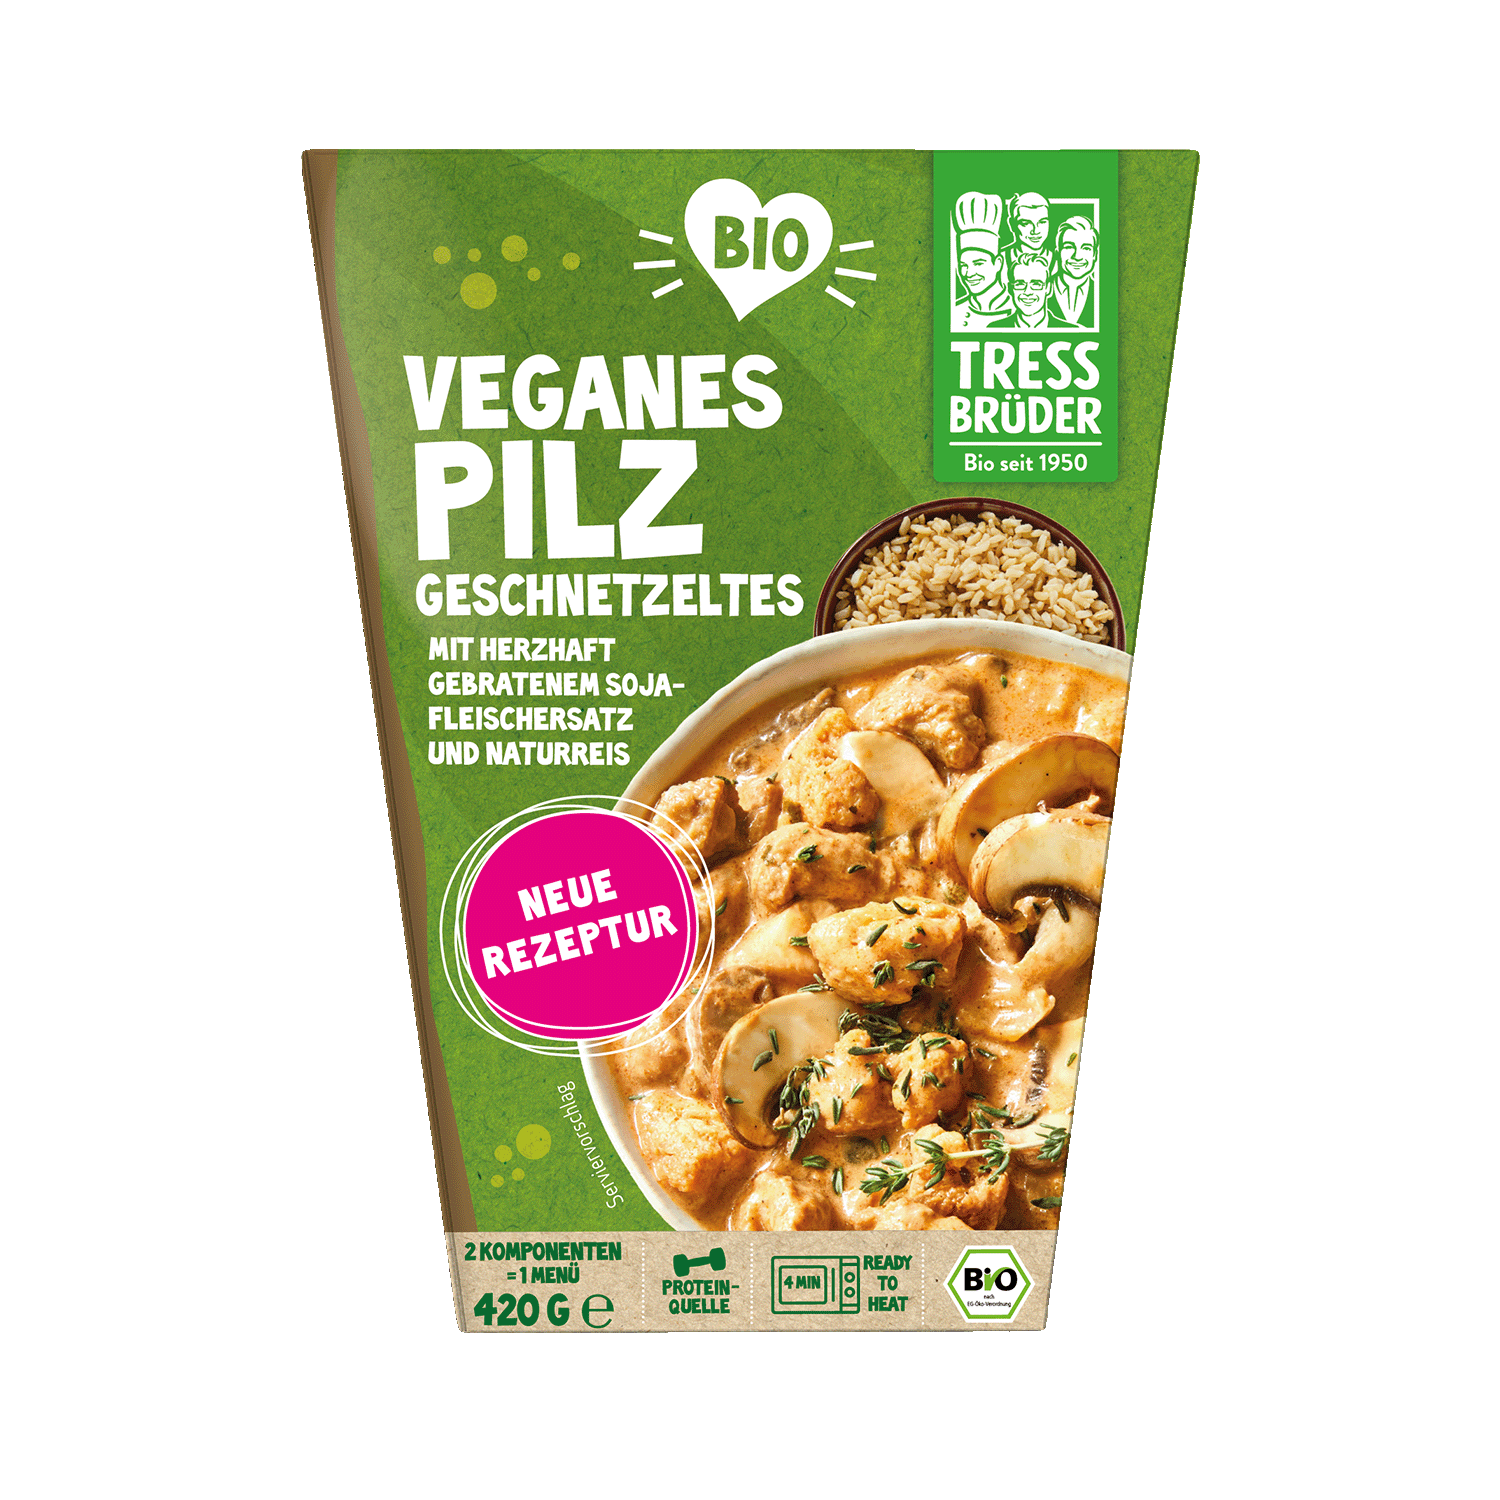 Veganes Pilzgeschnetzeltes mit Soja-Fleischersatz und Naturreis, BIO, 420g